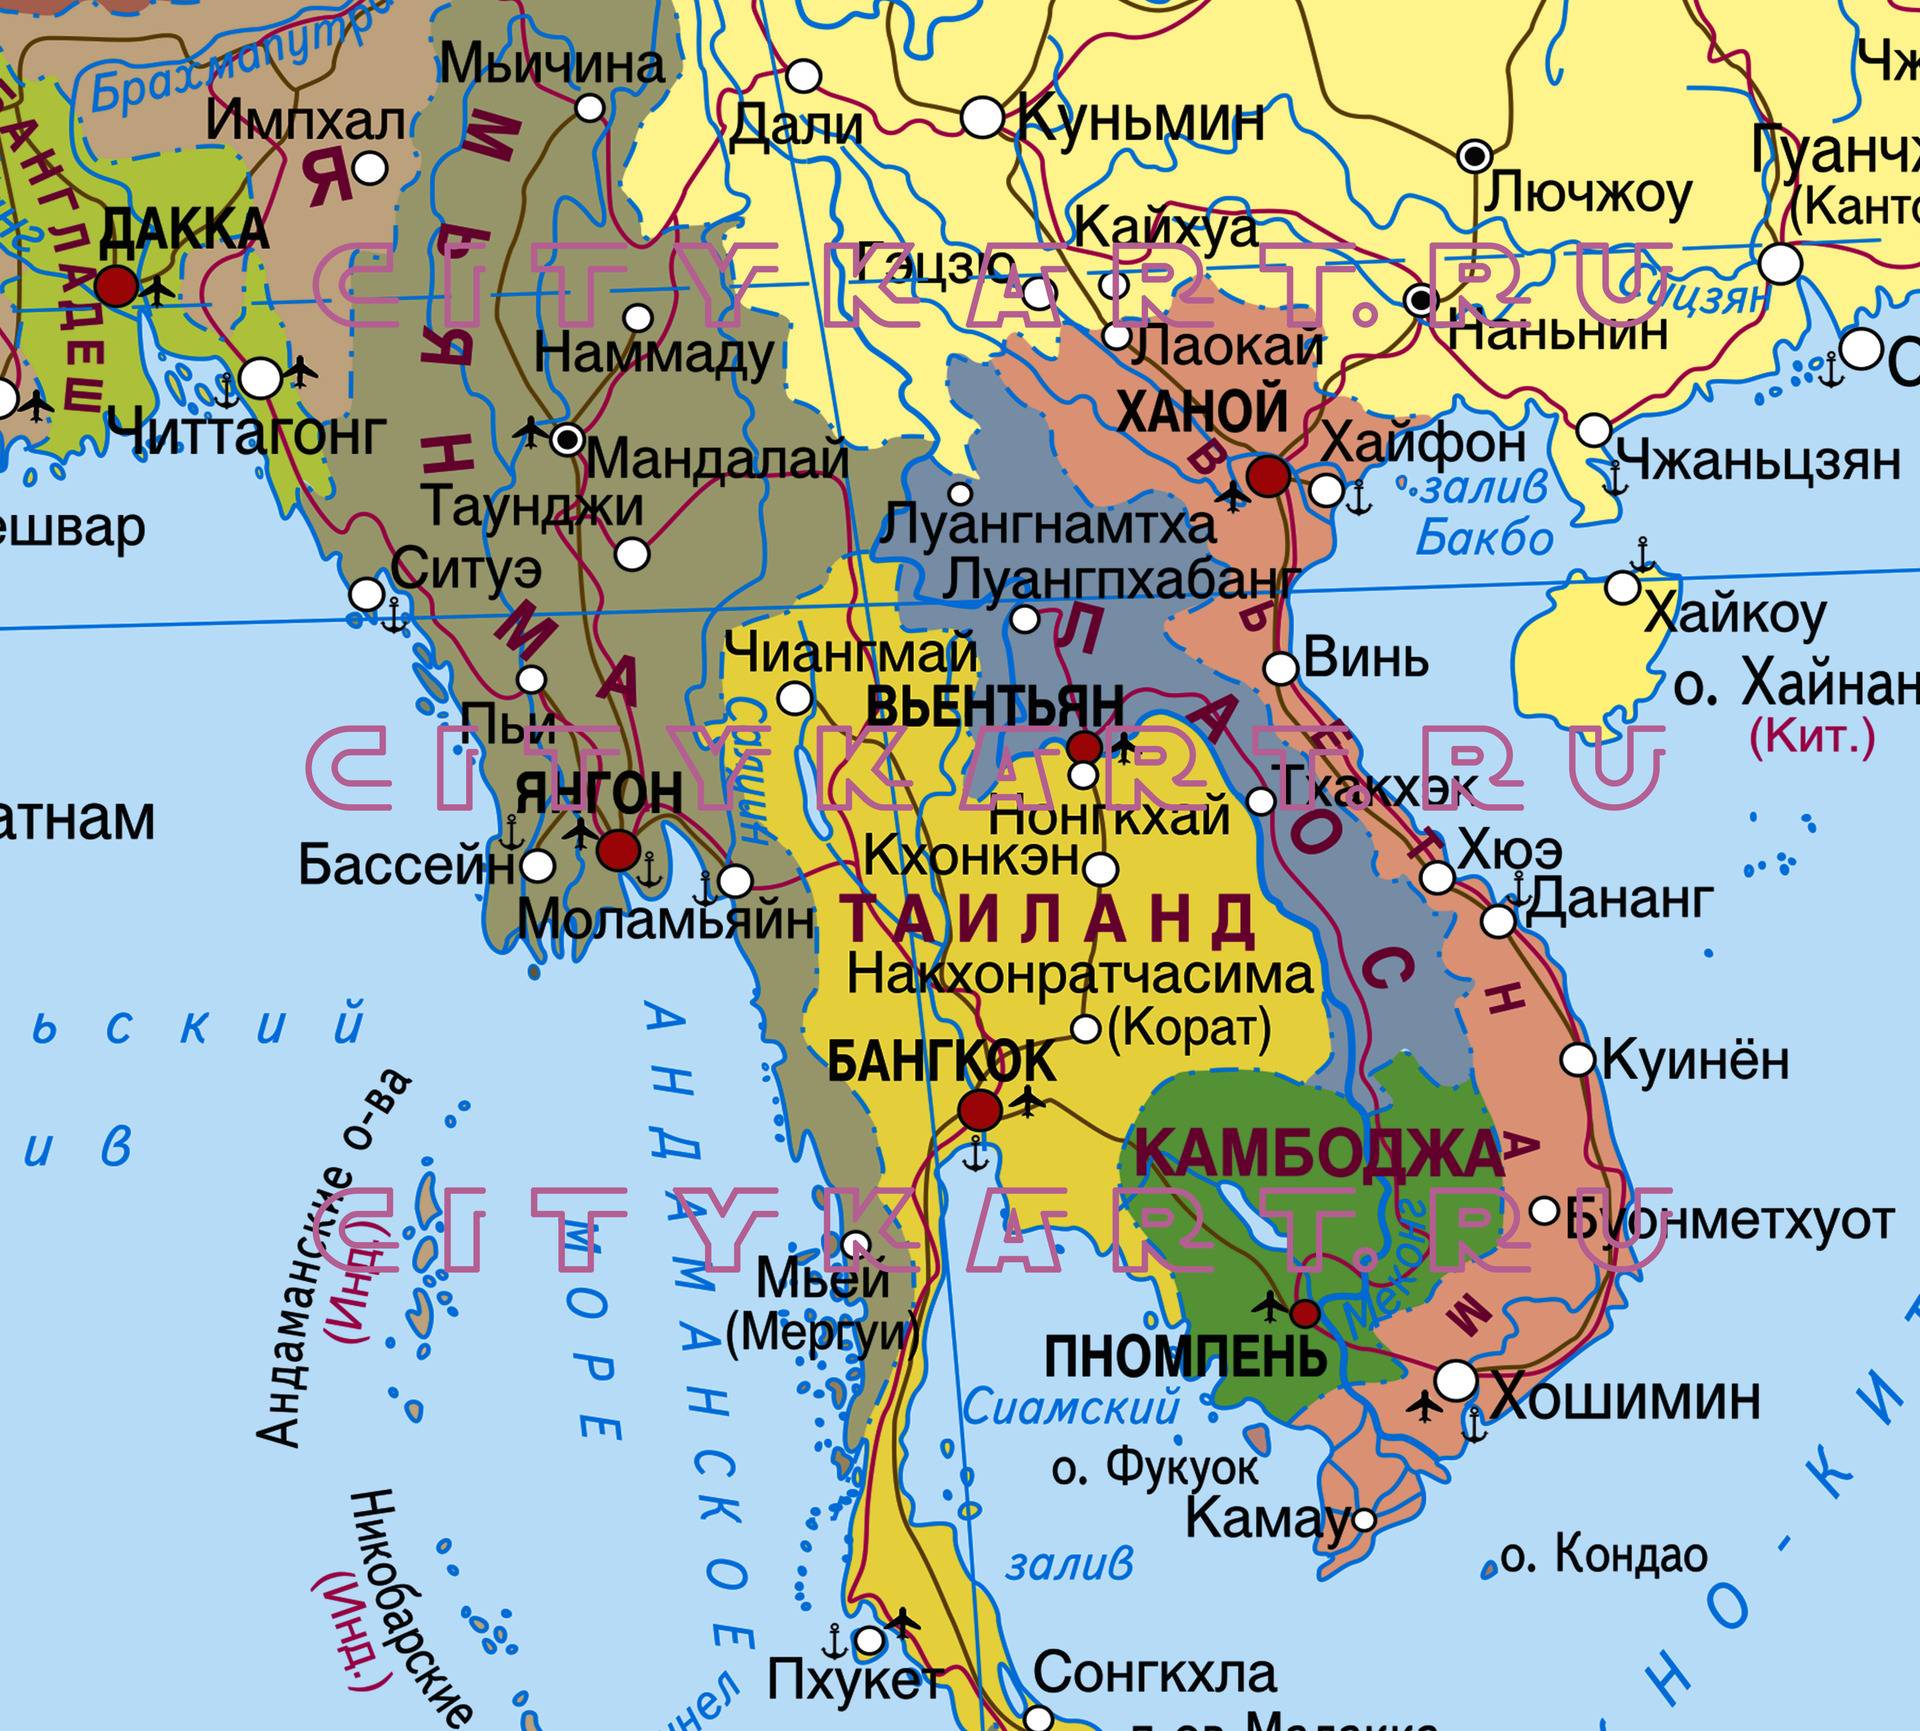 Королевство таиланд - страна улыбок - моря таиланда